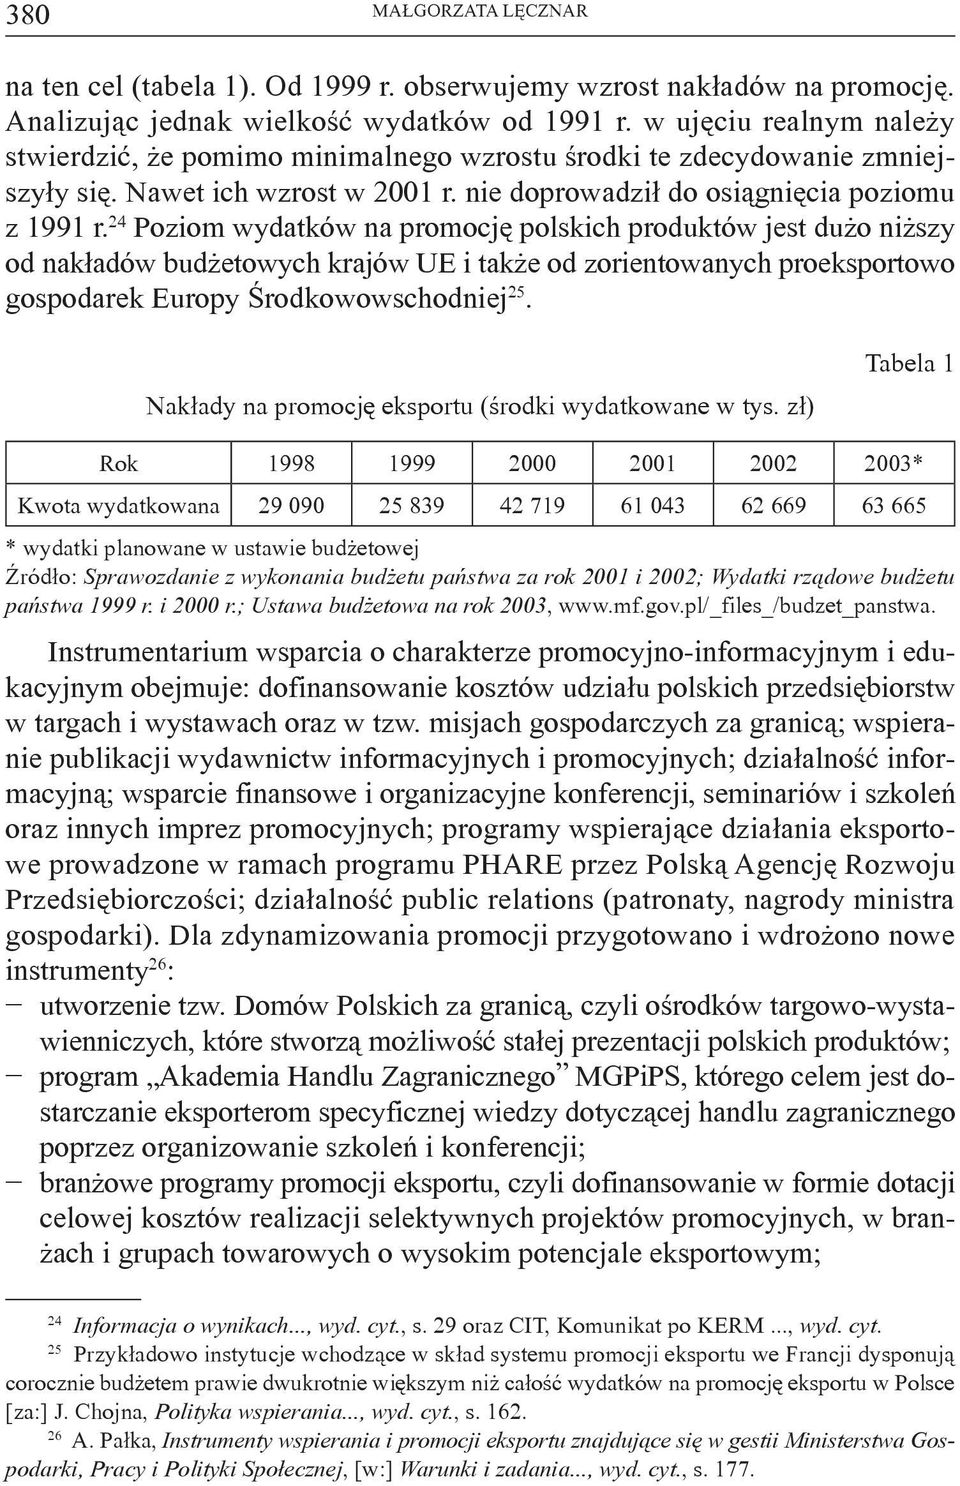 24 Poziom wydatków na promocję polskich produktów jest dużo niższy od nakładów budżetowych krajów UE i także od zorientowanych proeksportowo gospodarek Europy Środkowowschodniej 25.